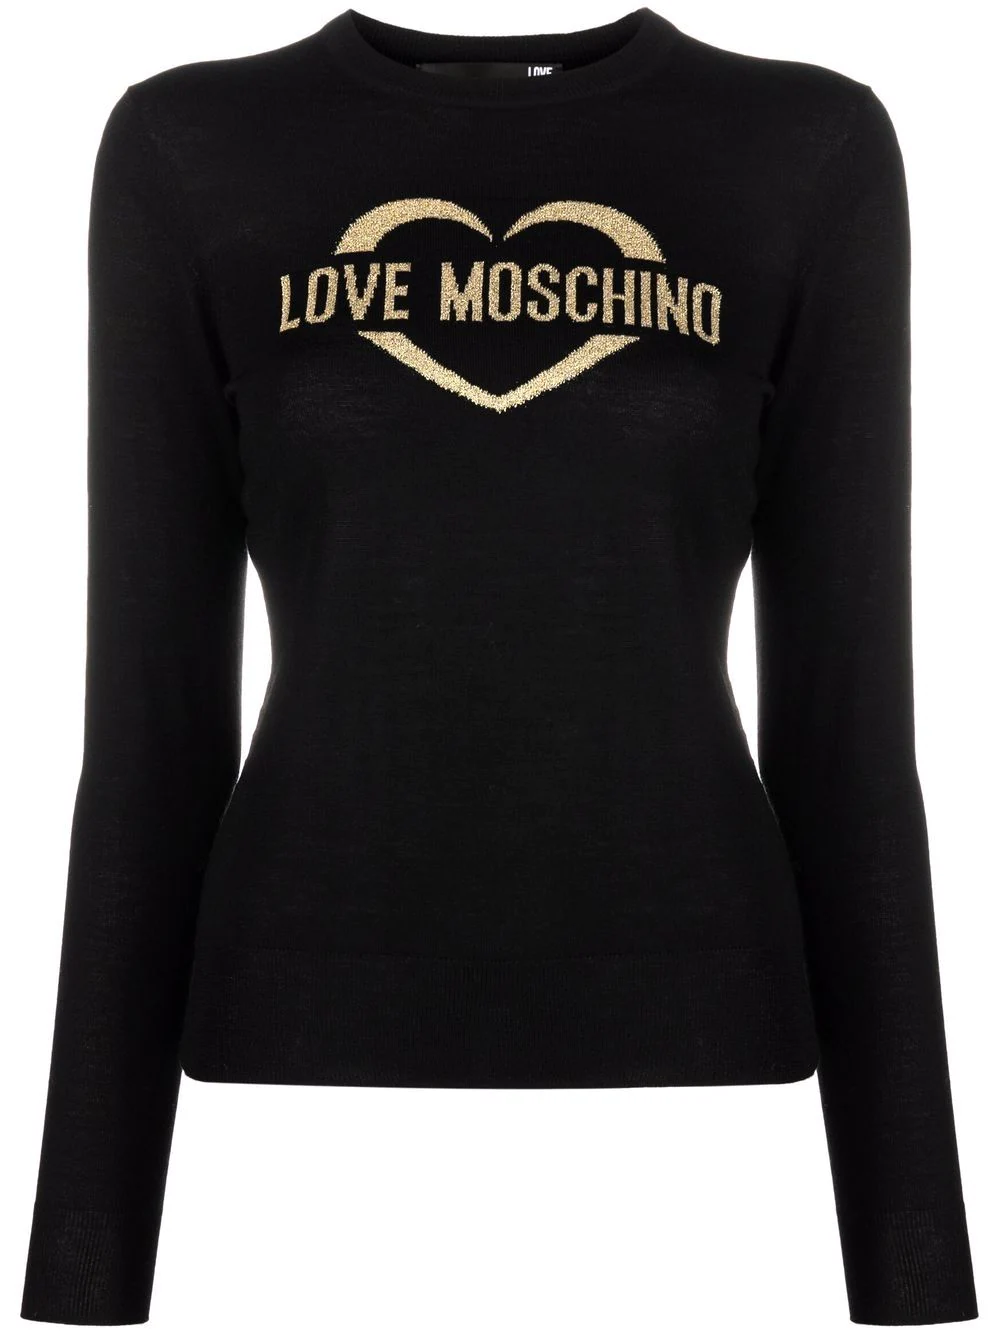 Maglia Love Moschino con Logo / Nero - Ideal Moda